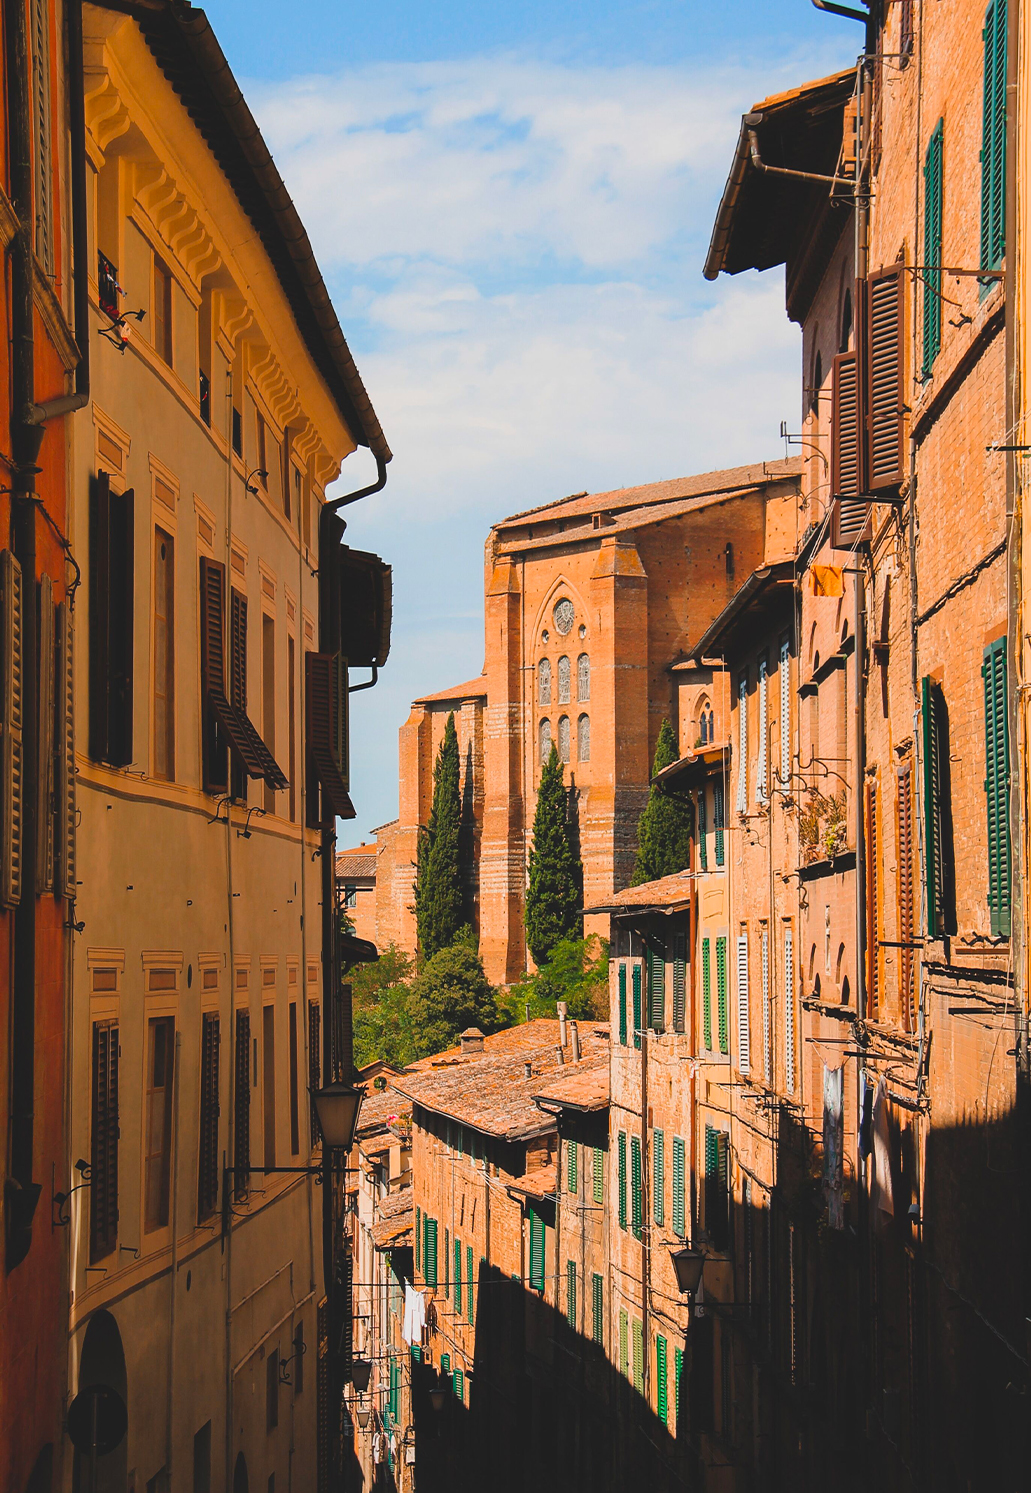 The best spots in Siena